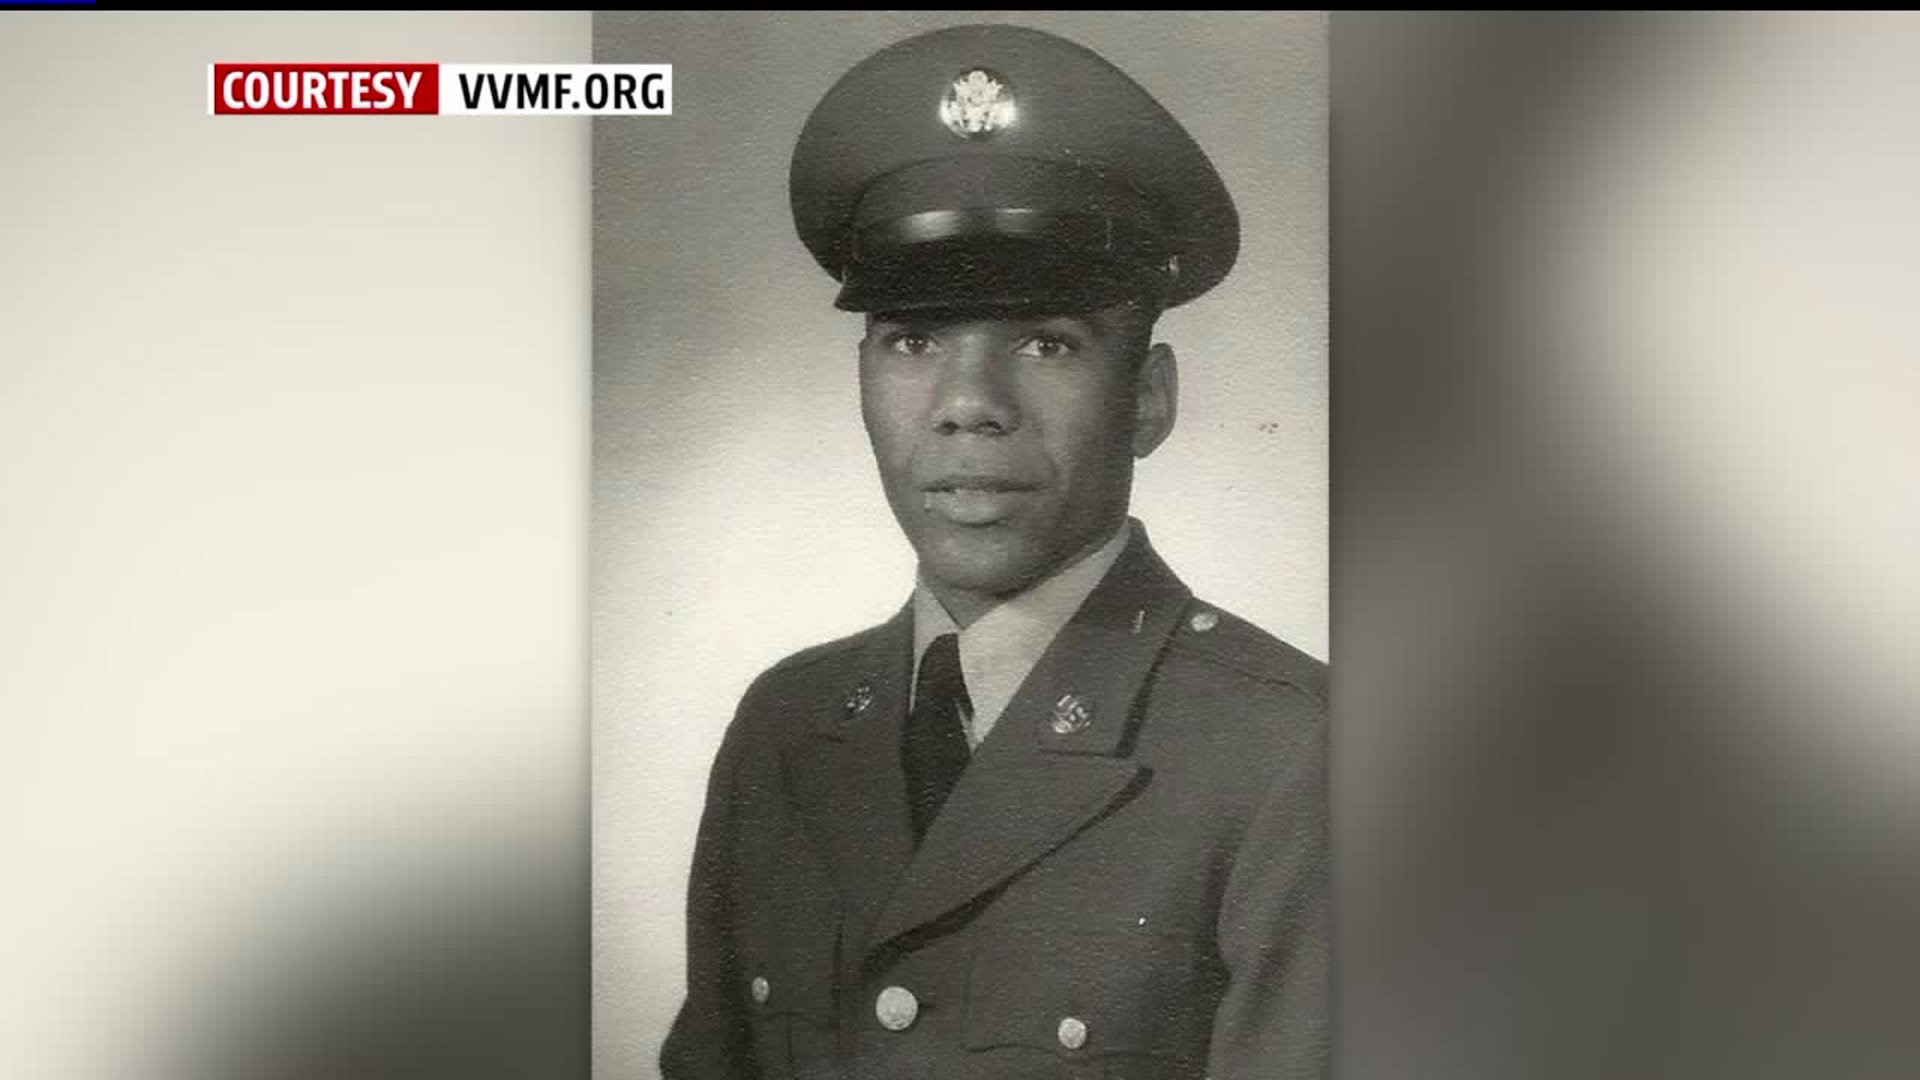 York Vietnam Veteran honored 50 years later